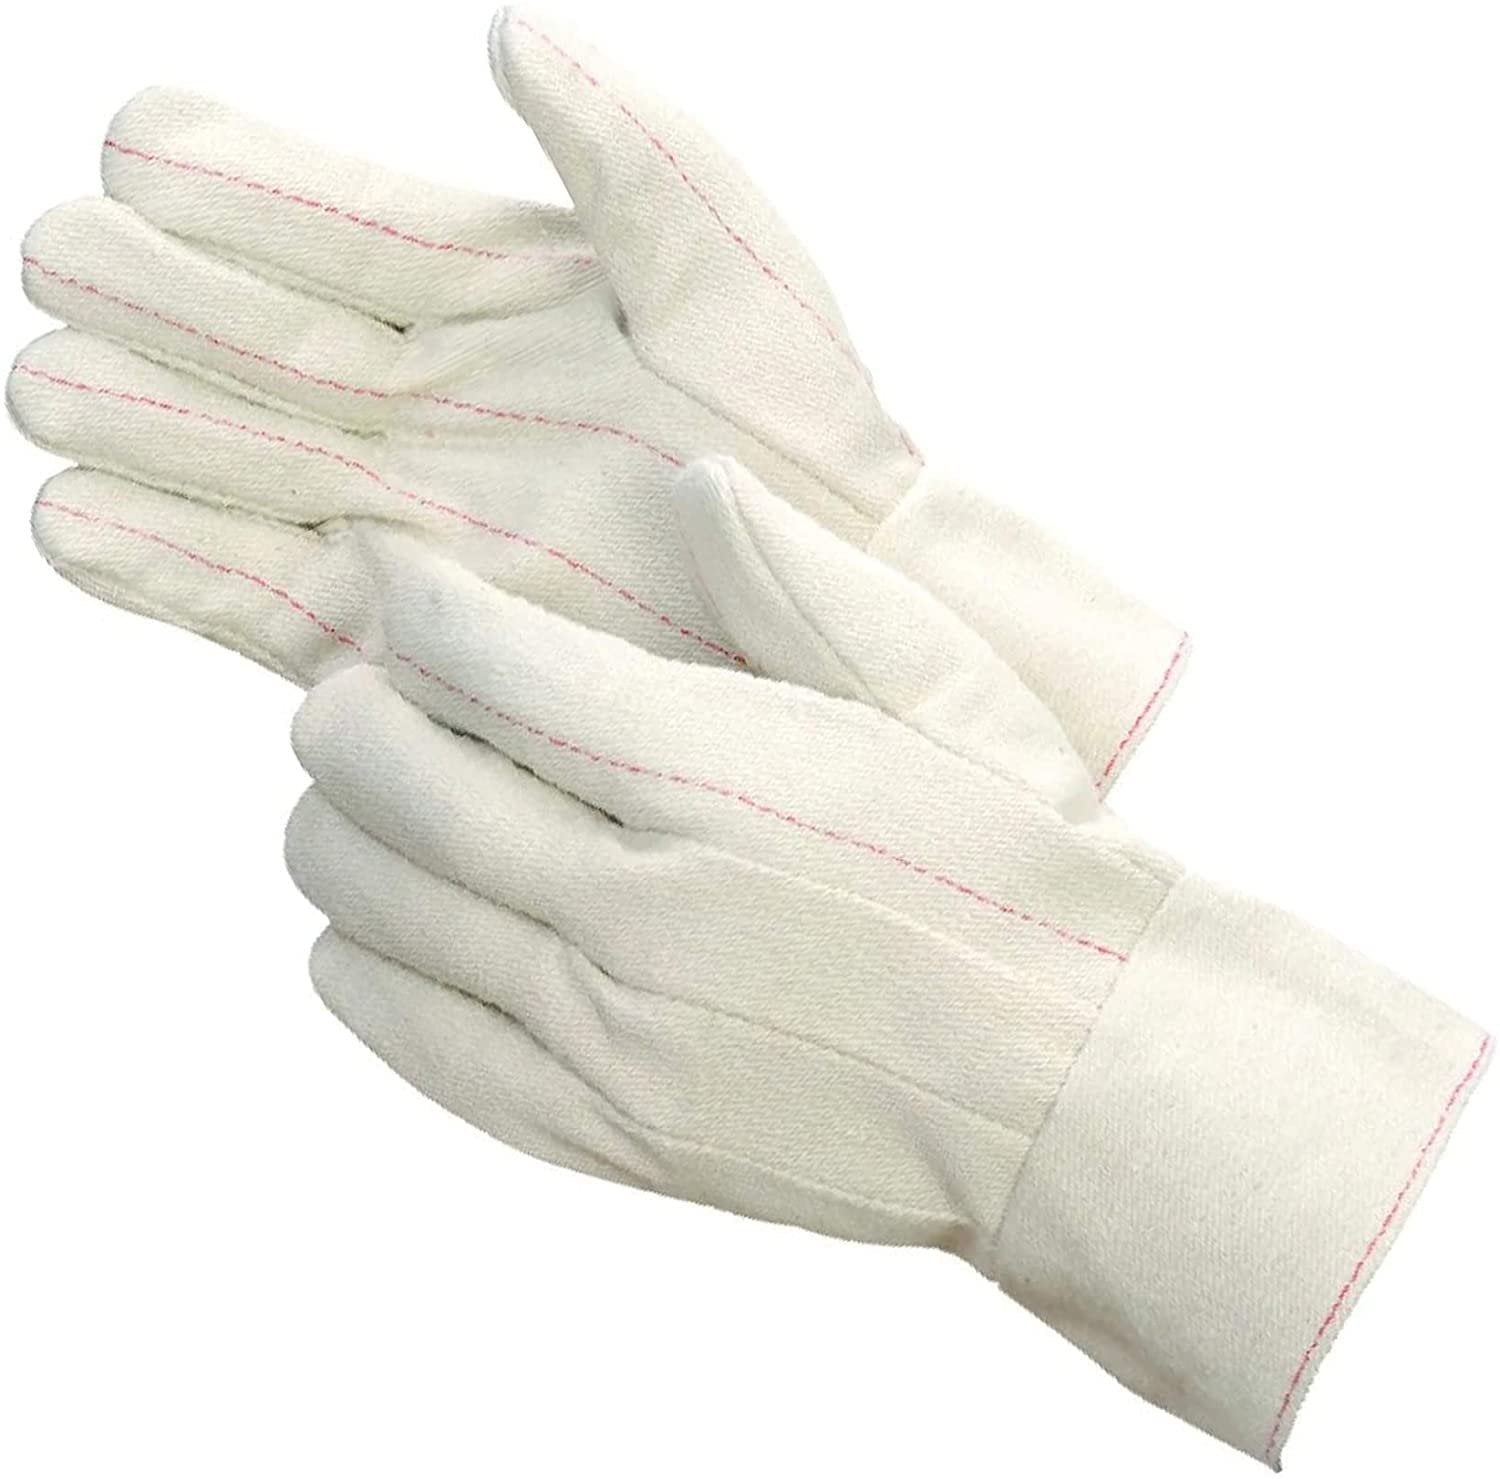 6pairs Hand Gloves Garden Work Thin Cotton Glove Gardening Construction Welding 